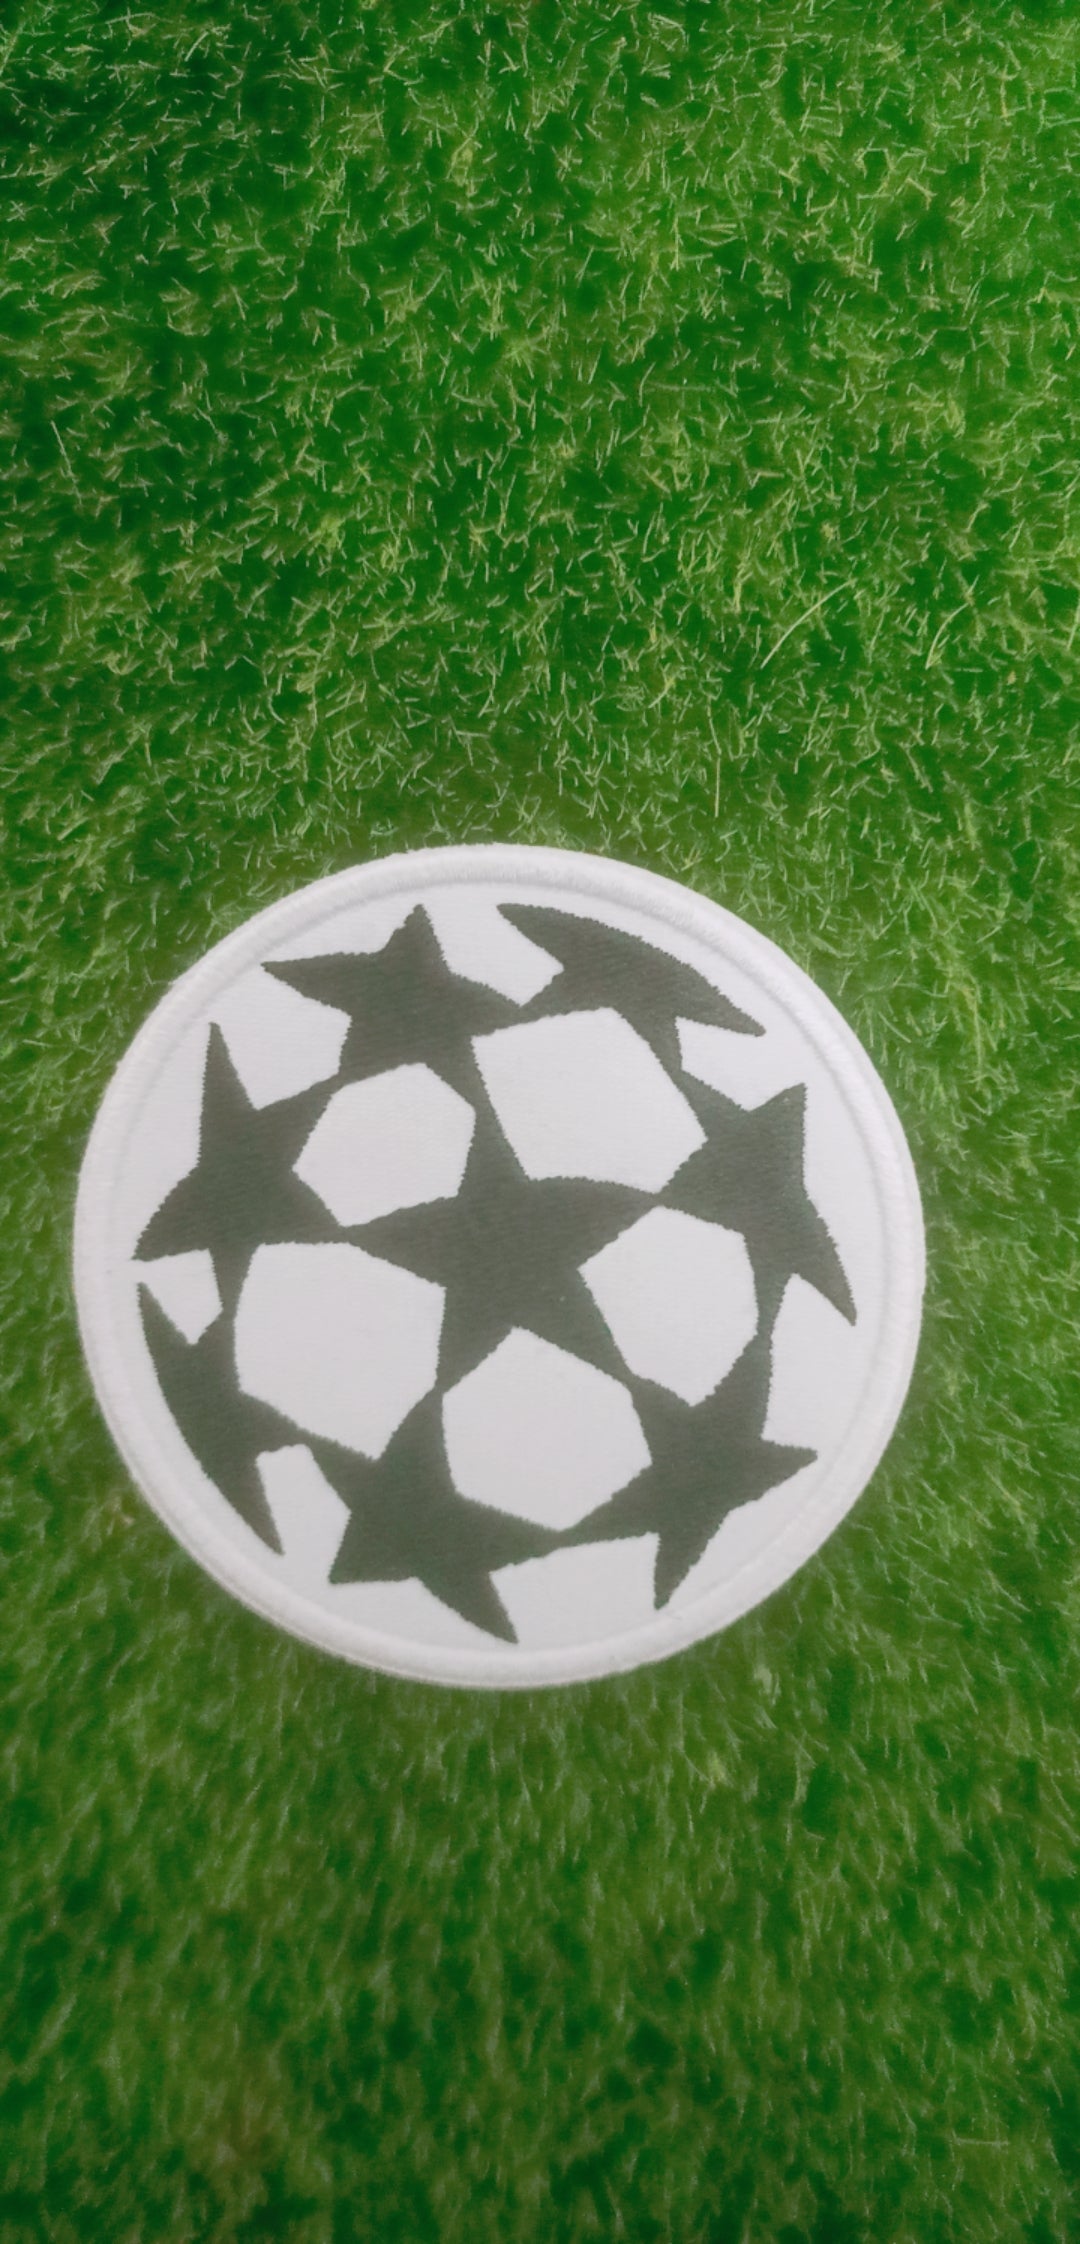 1995/96 UEFA Champions League Patch